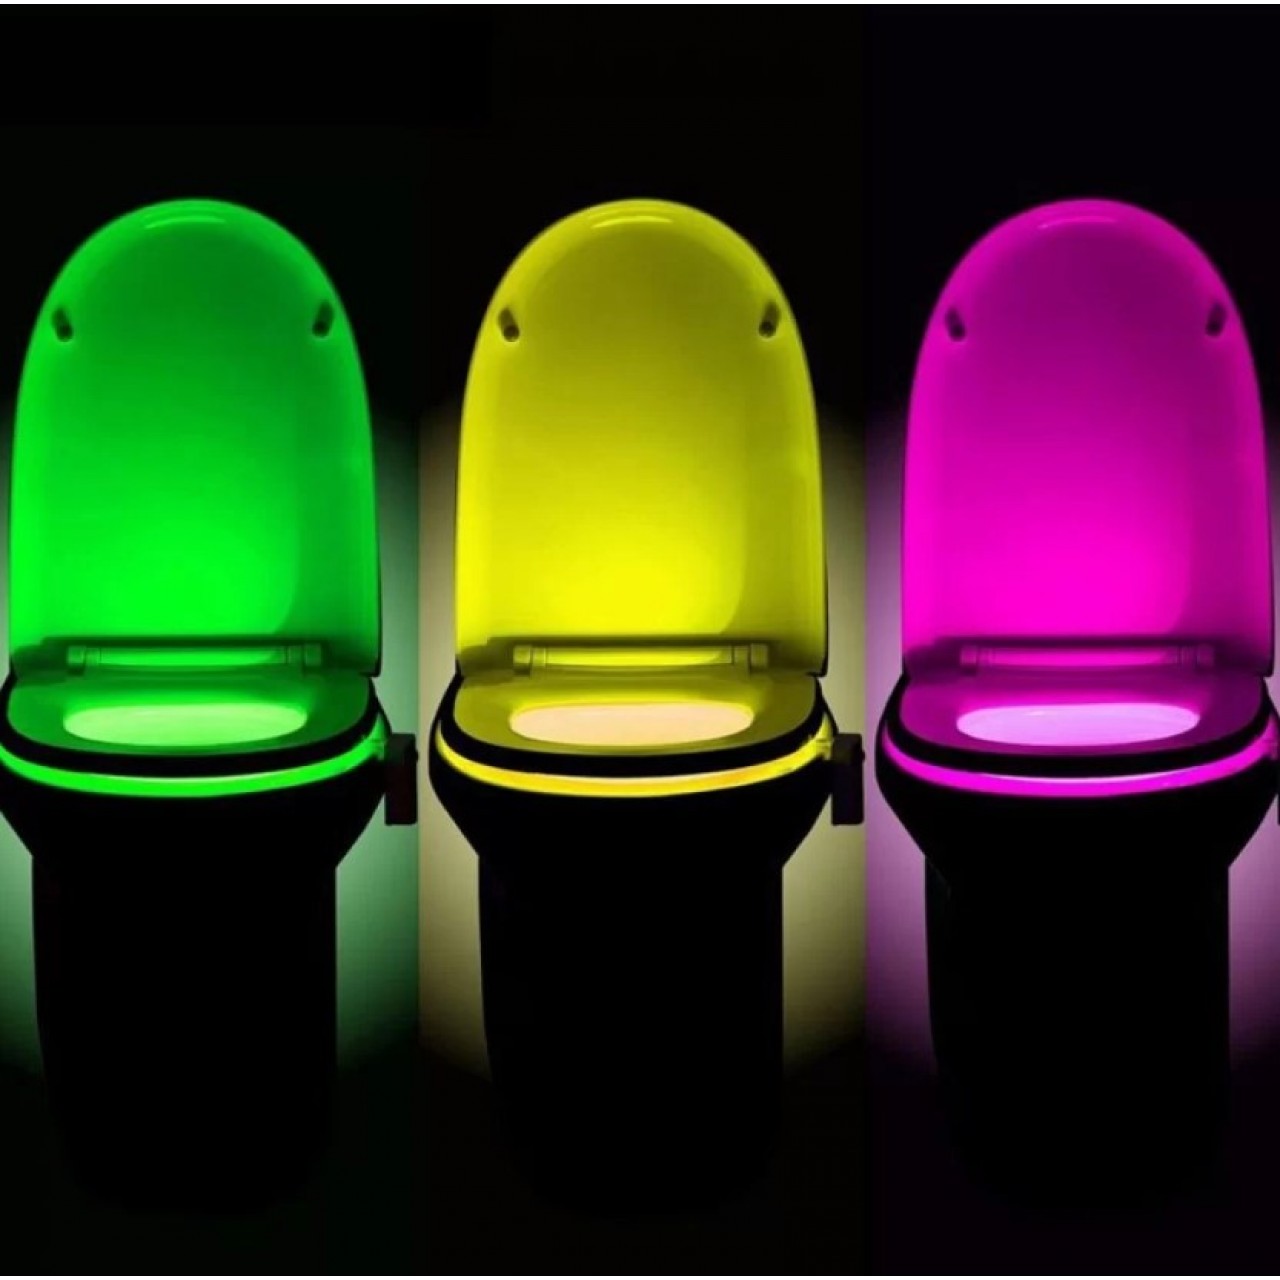 Φωτιστικό led με 8 χρώματα και αισθητήρα κίνησης για λεκάνη τουαλέτας - 5524